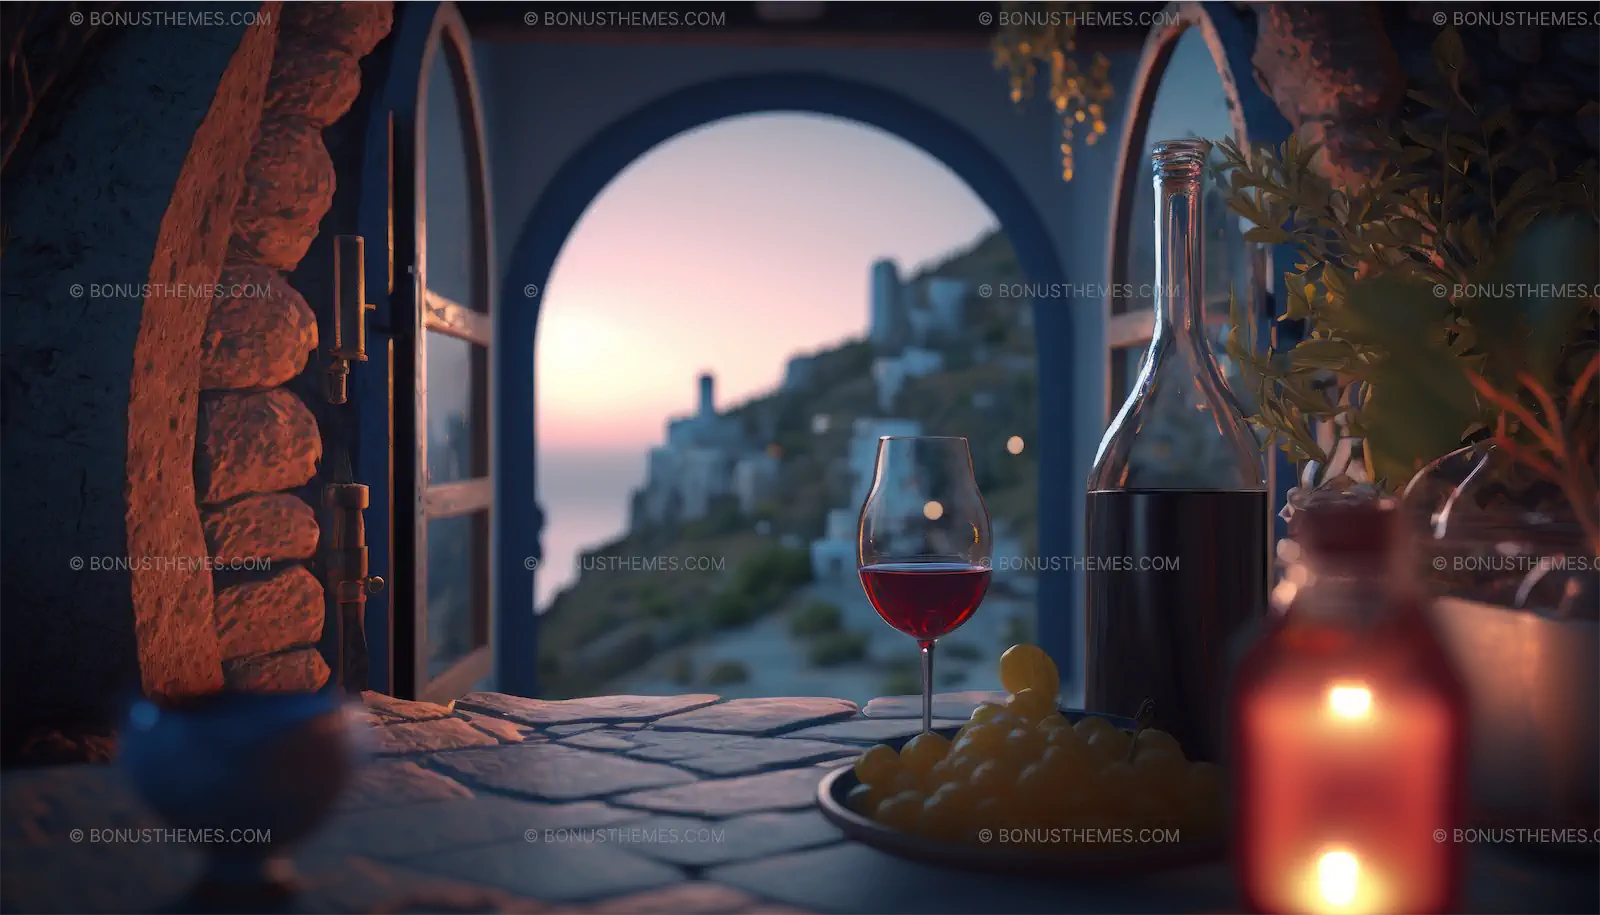 Α plate of grapes and a glass of wine at Santorini island